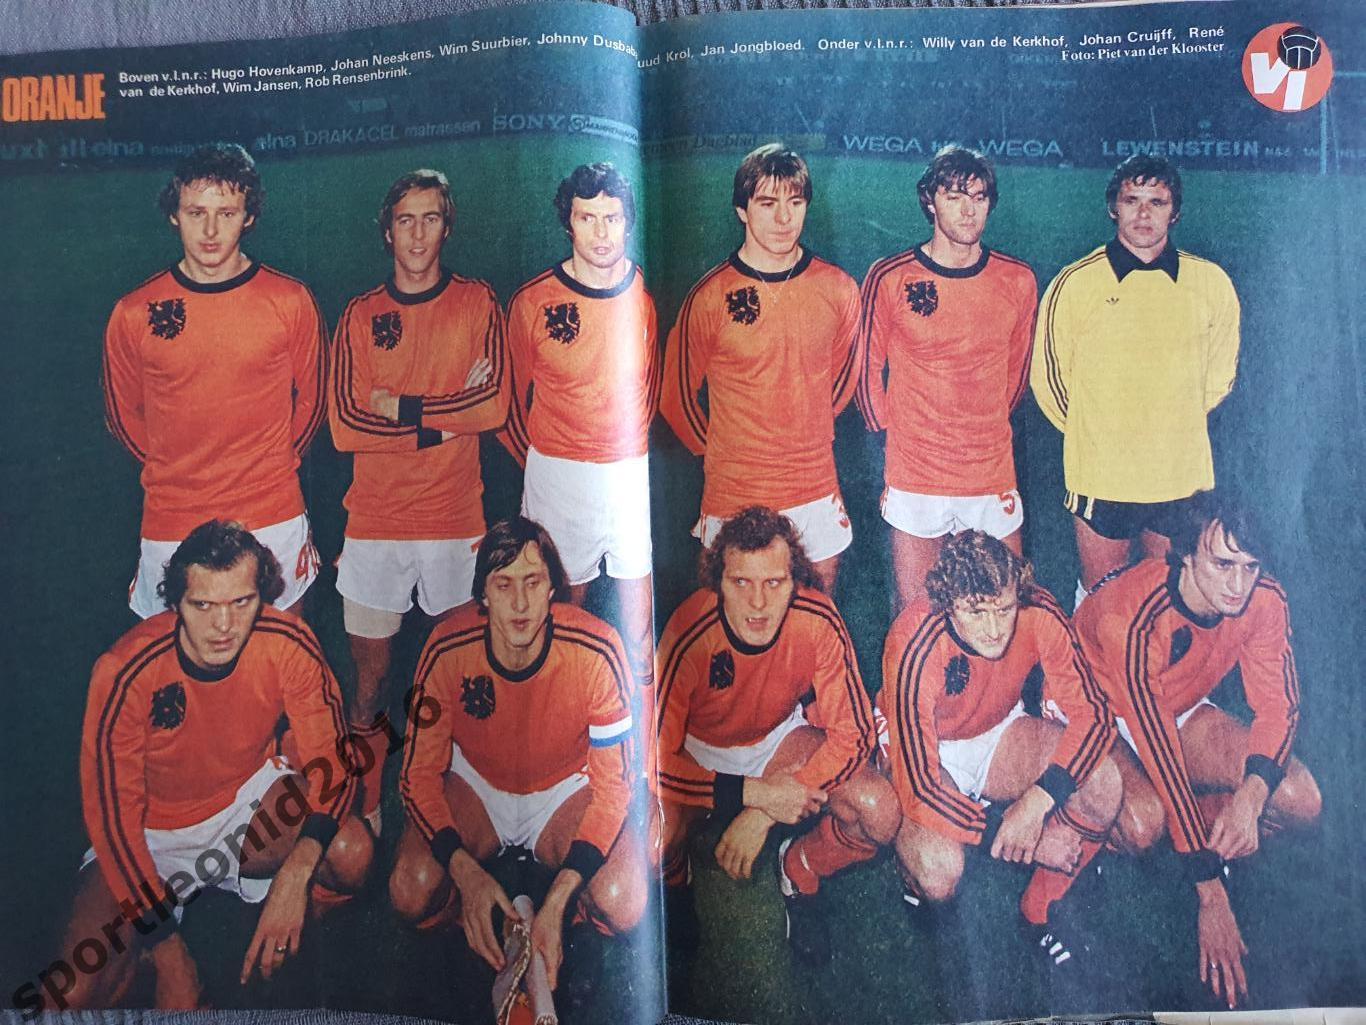 Voetbal International 1977 51 выпуск годовая подписка .1